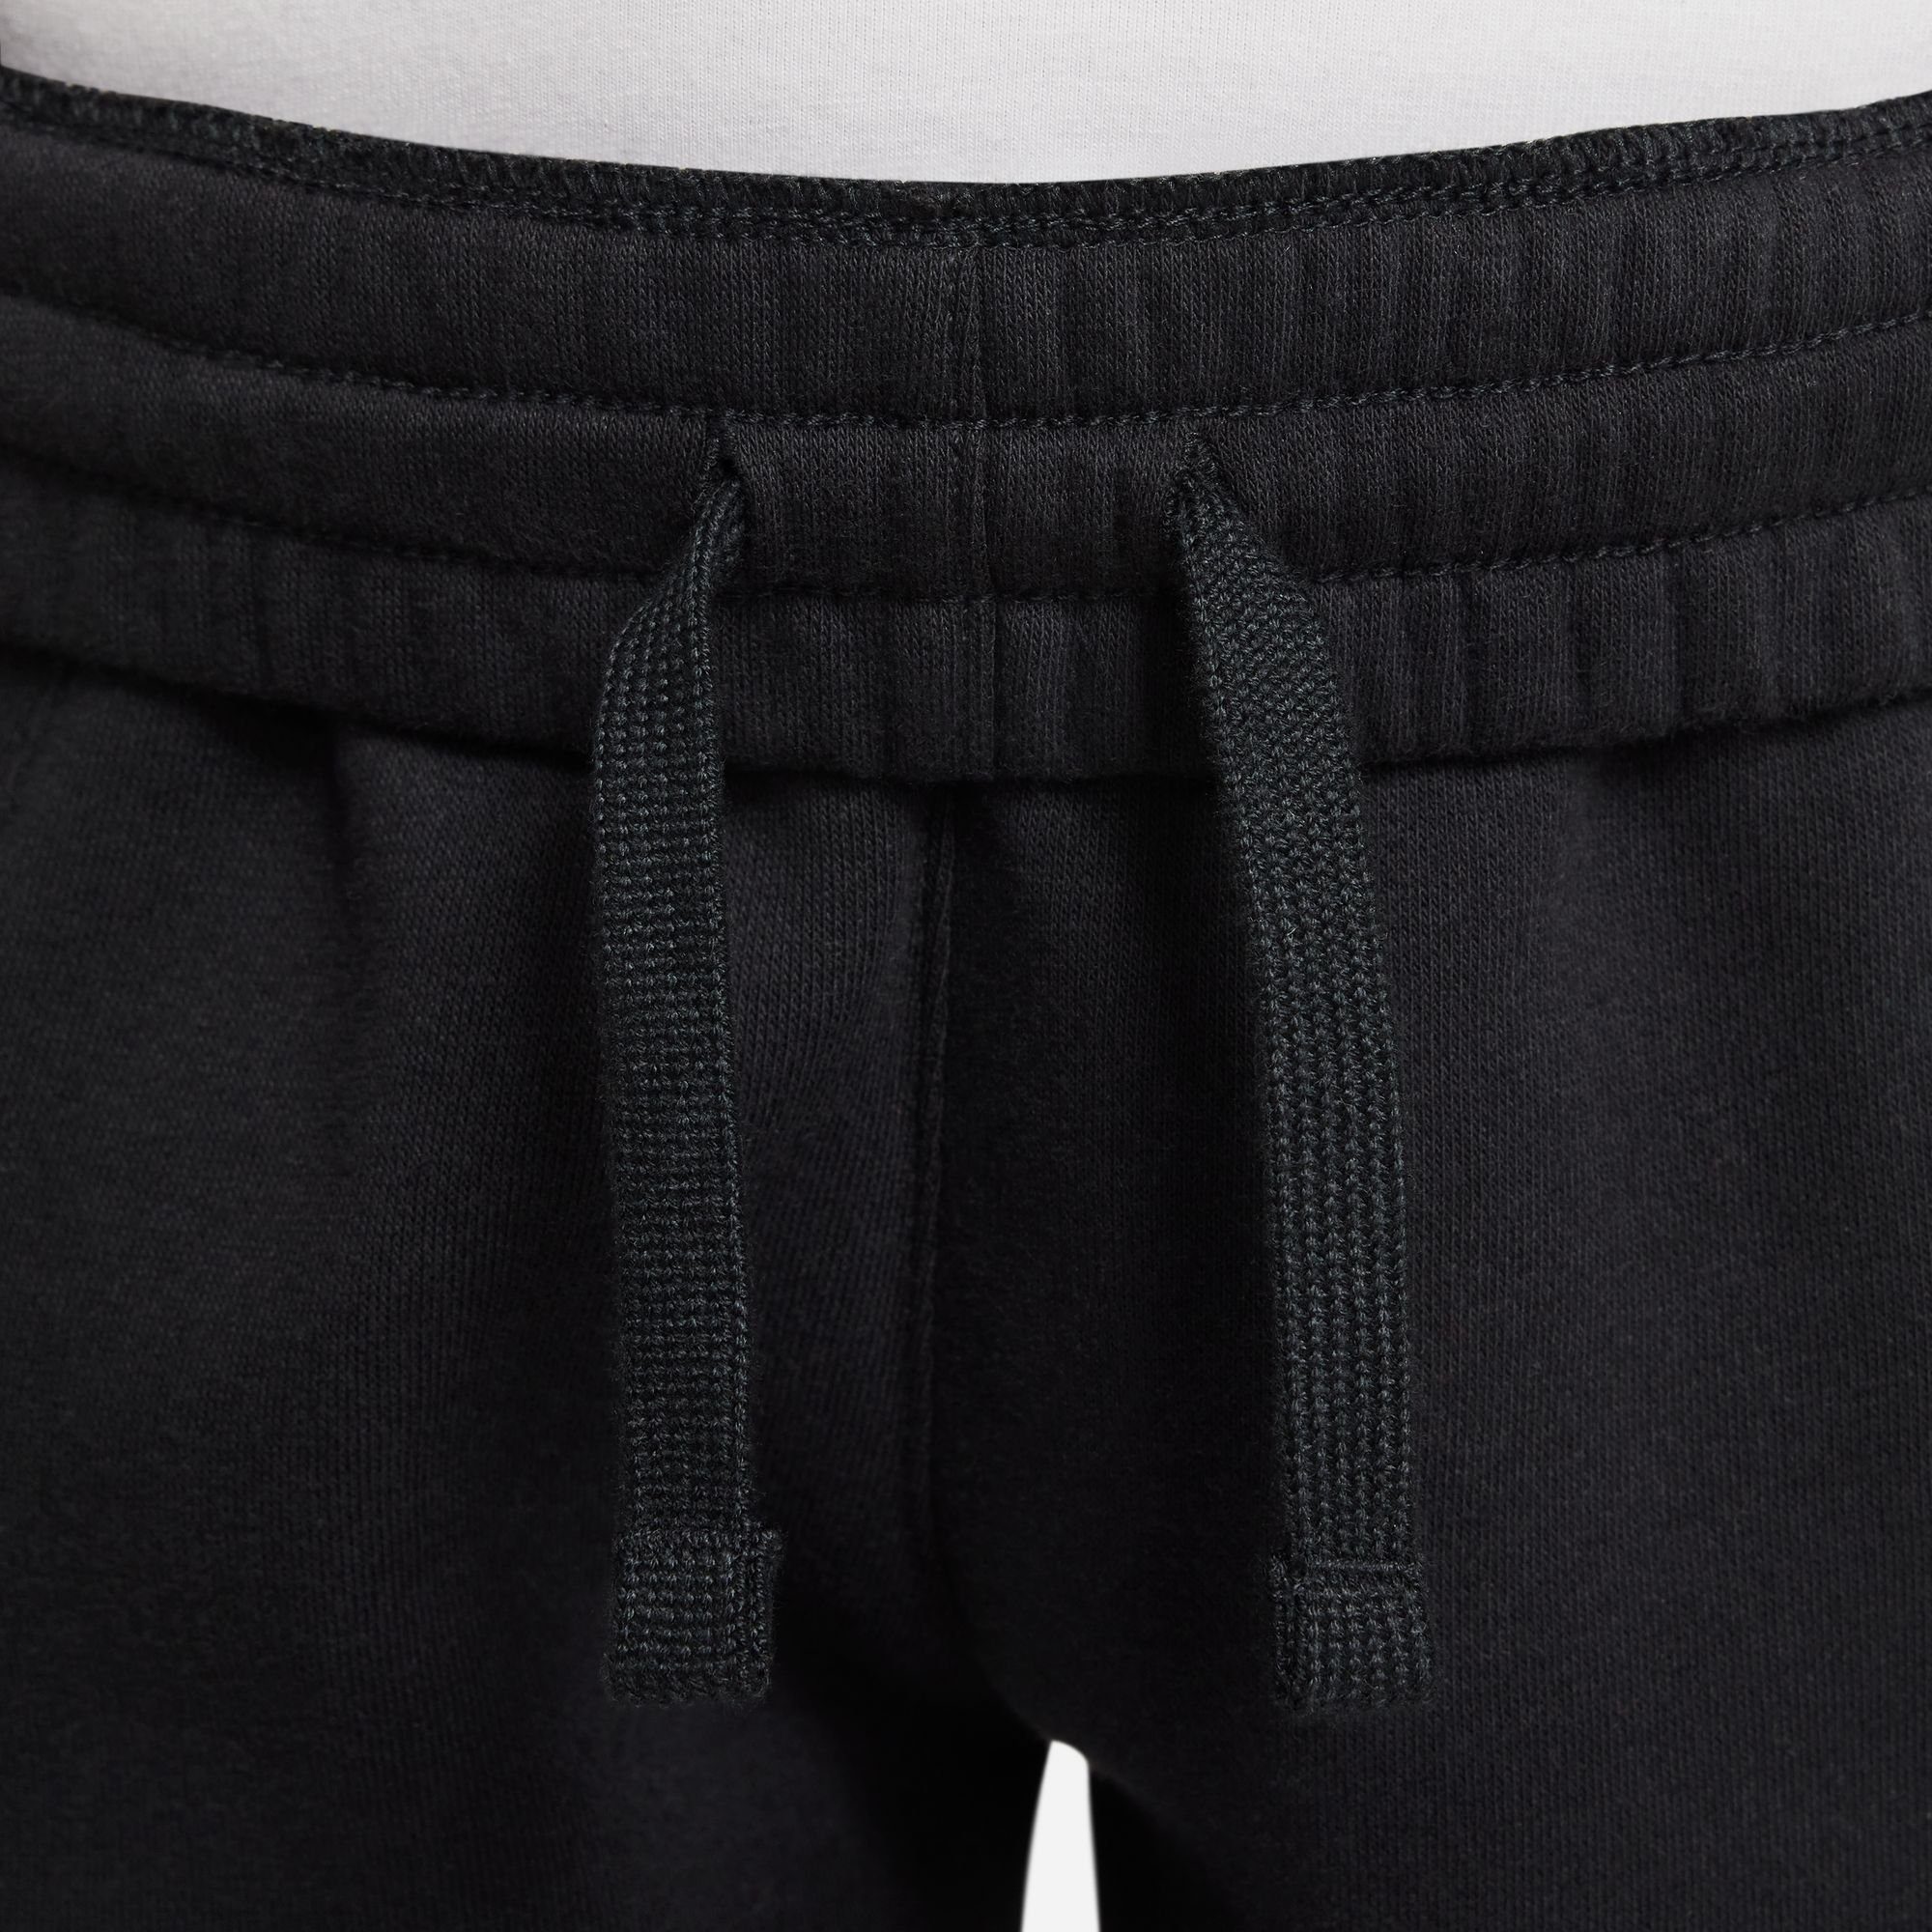 KIDS' BLACK/WHITE Nike CLUB FLEECE Jogginghose Sportswear JOGGER BIG PANTS